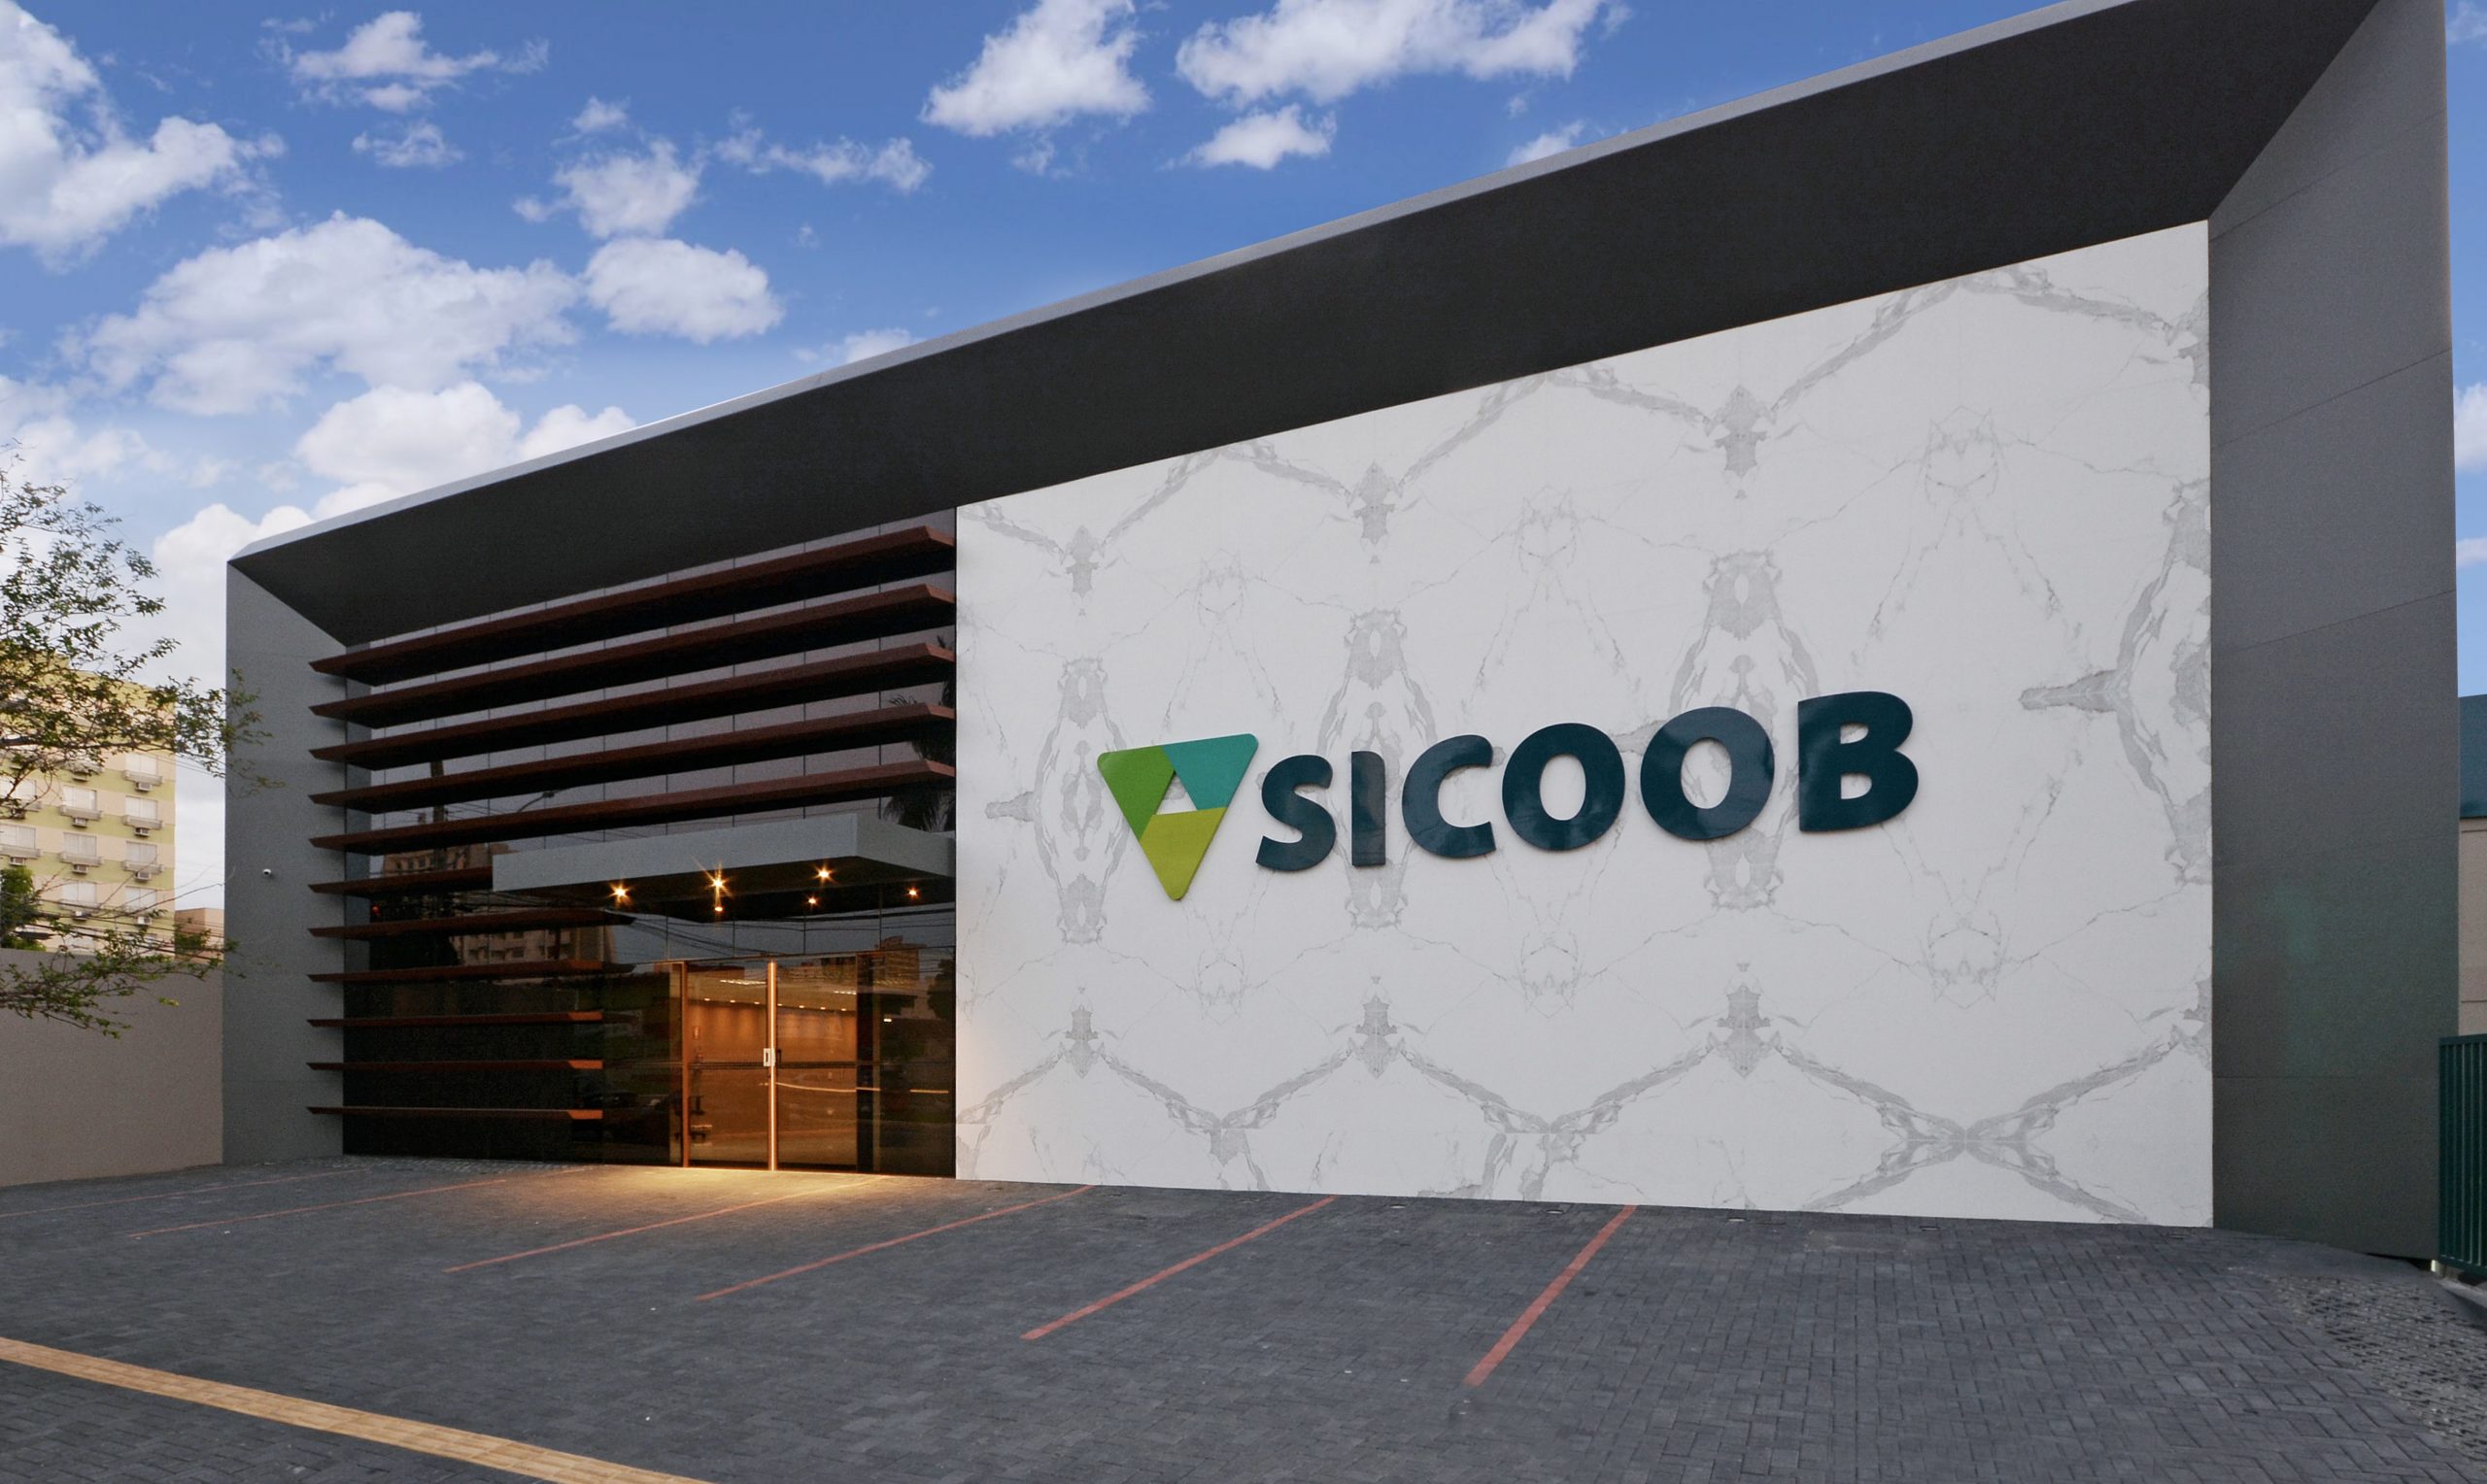 Após 72 horas, o Sistema de Cooperativas de Crédito do Brasil (Sicoob) atingiu o limite de R$ 1,195 bilhão que tinha disponível para contratos de crédito por meio do Pronampe